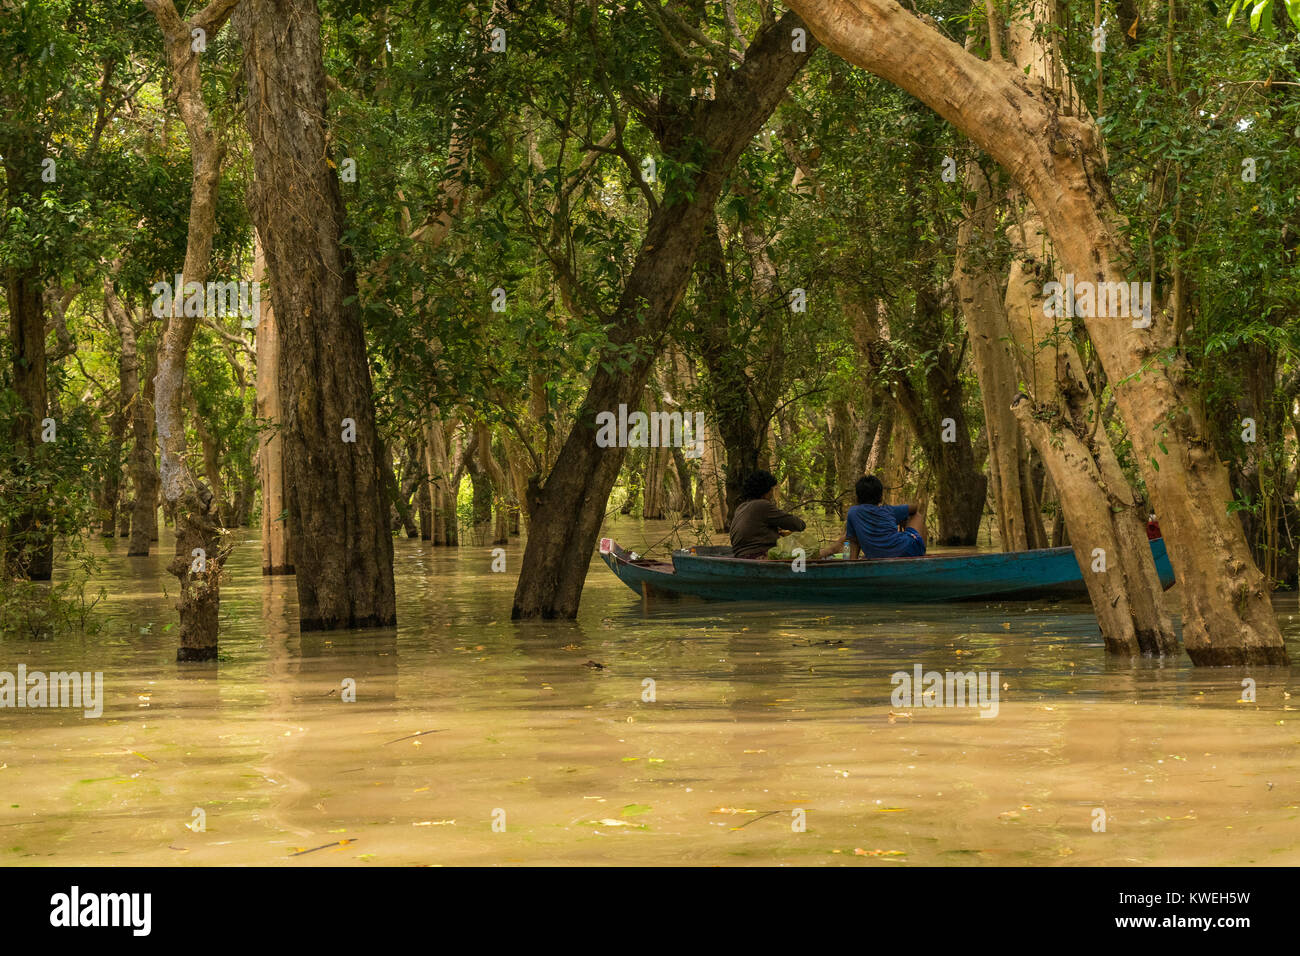 Deux peuples asiatiques sur un bleu bateau, explorer la forêt noyée arbres inondés flottant dans Kampong Phluk, Siem Reap, Cambodge, Asie du Sud Est. Banque D'Images